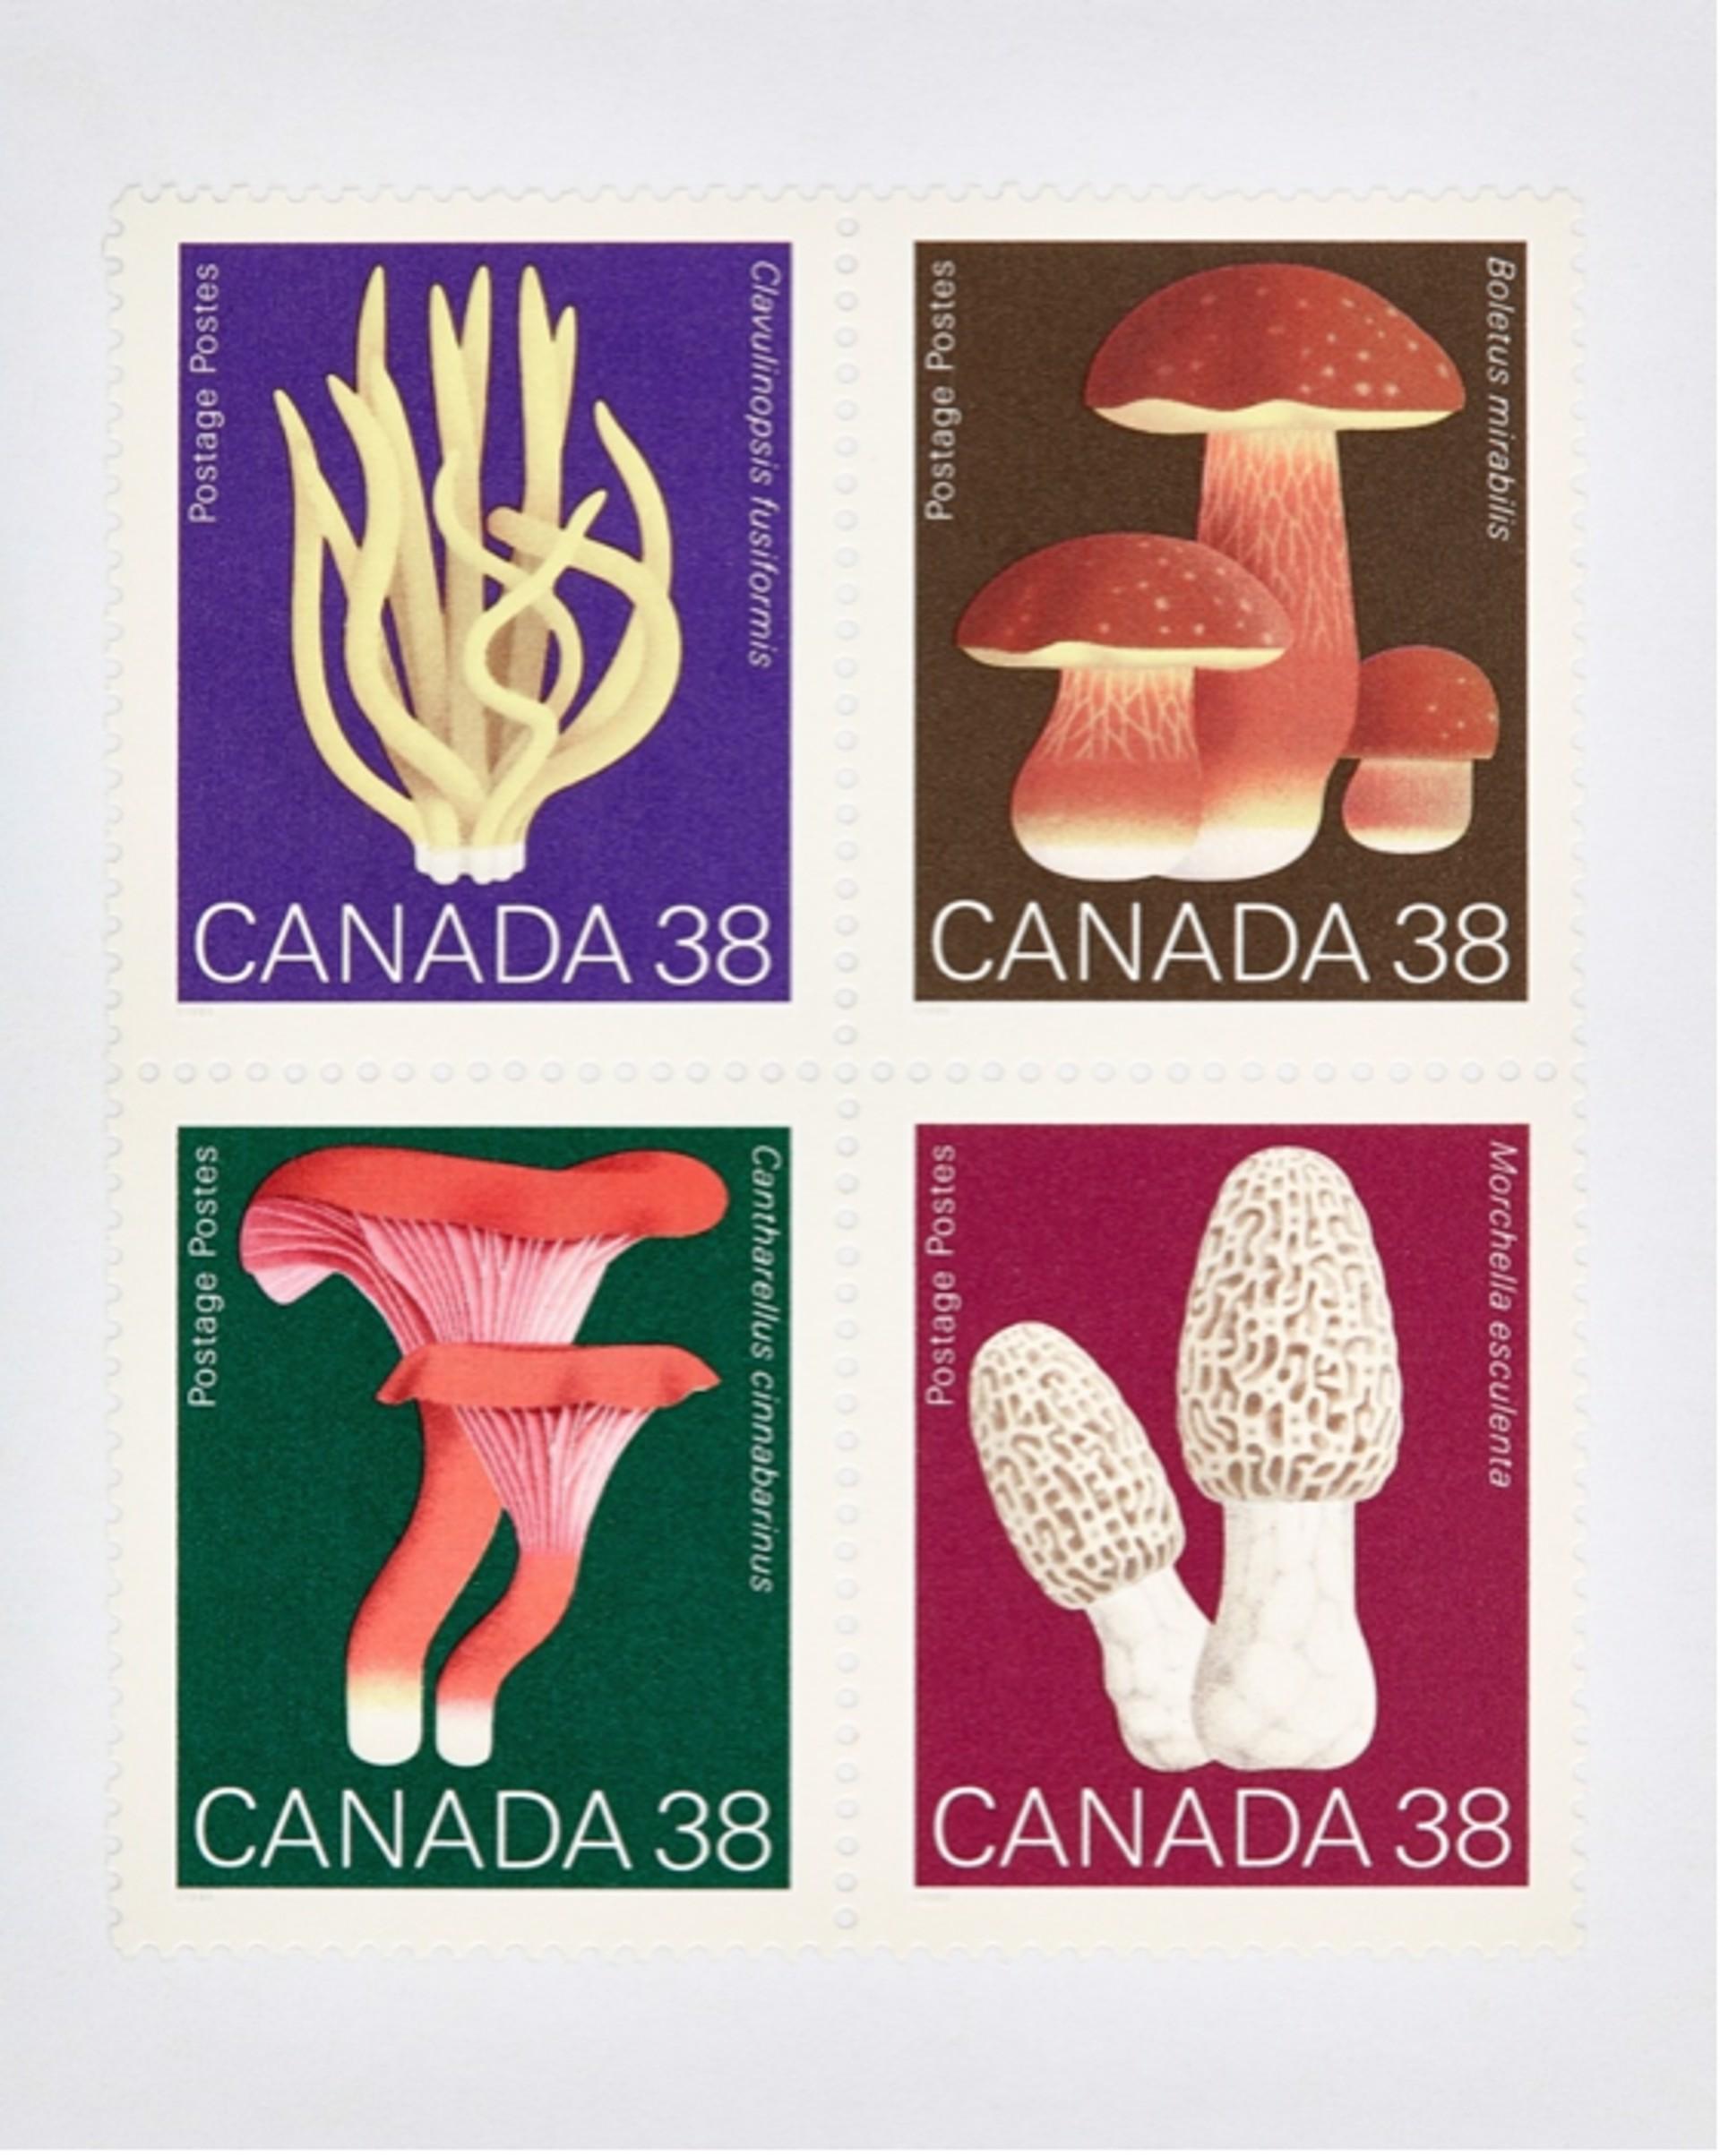 Kanada Pilz 38 x 4
Digitaler C-Print / Archivpigmentdruck
Auflage von 20 Stück pro Größe
Verfügbare Größen:
48 x 36

Die Serie "Collectible" beschäftigt sich auf Makroebene mit Münzen, Banknoten und Briefmarken. Diese Bilder werden mit der Absicht